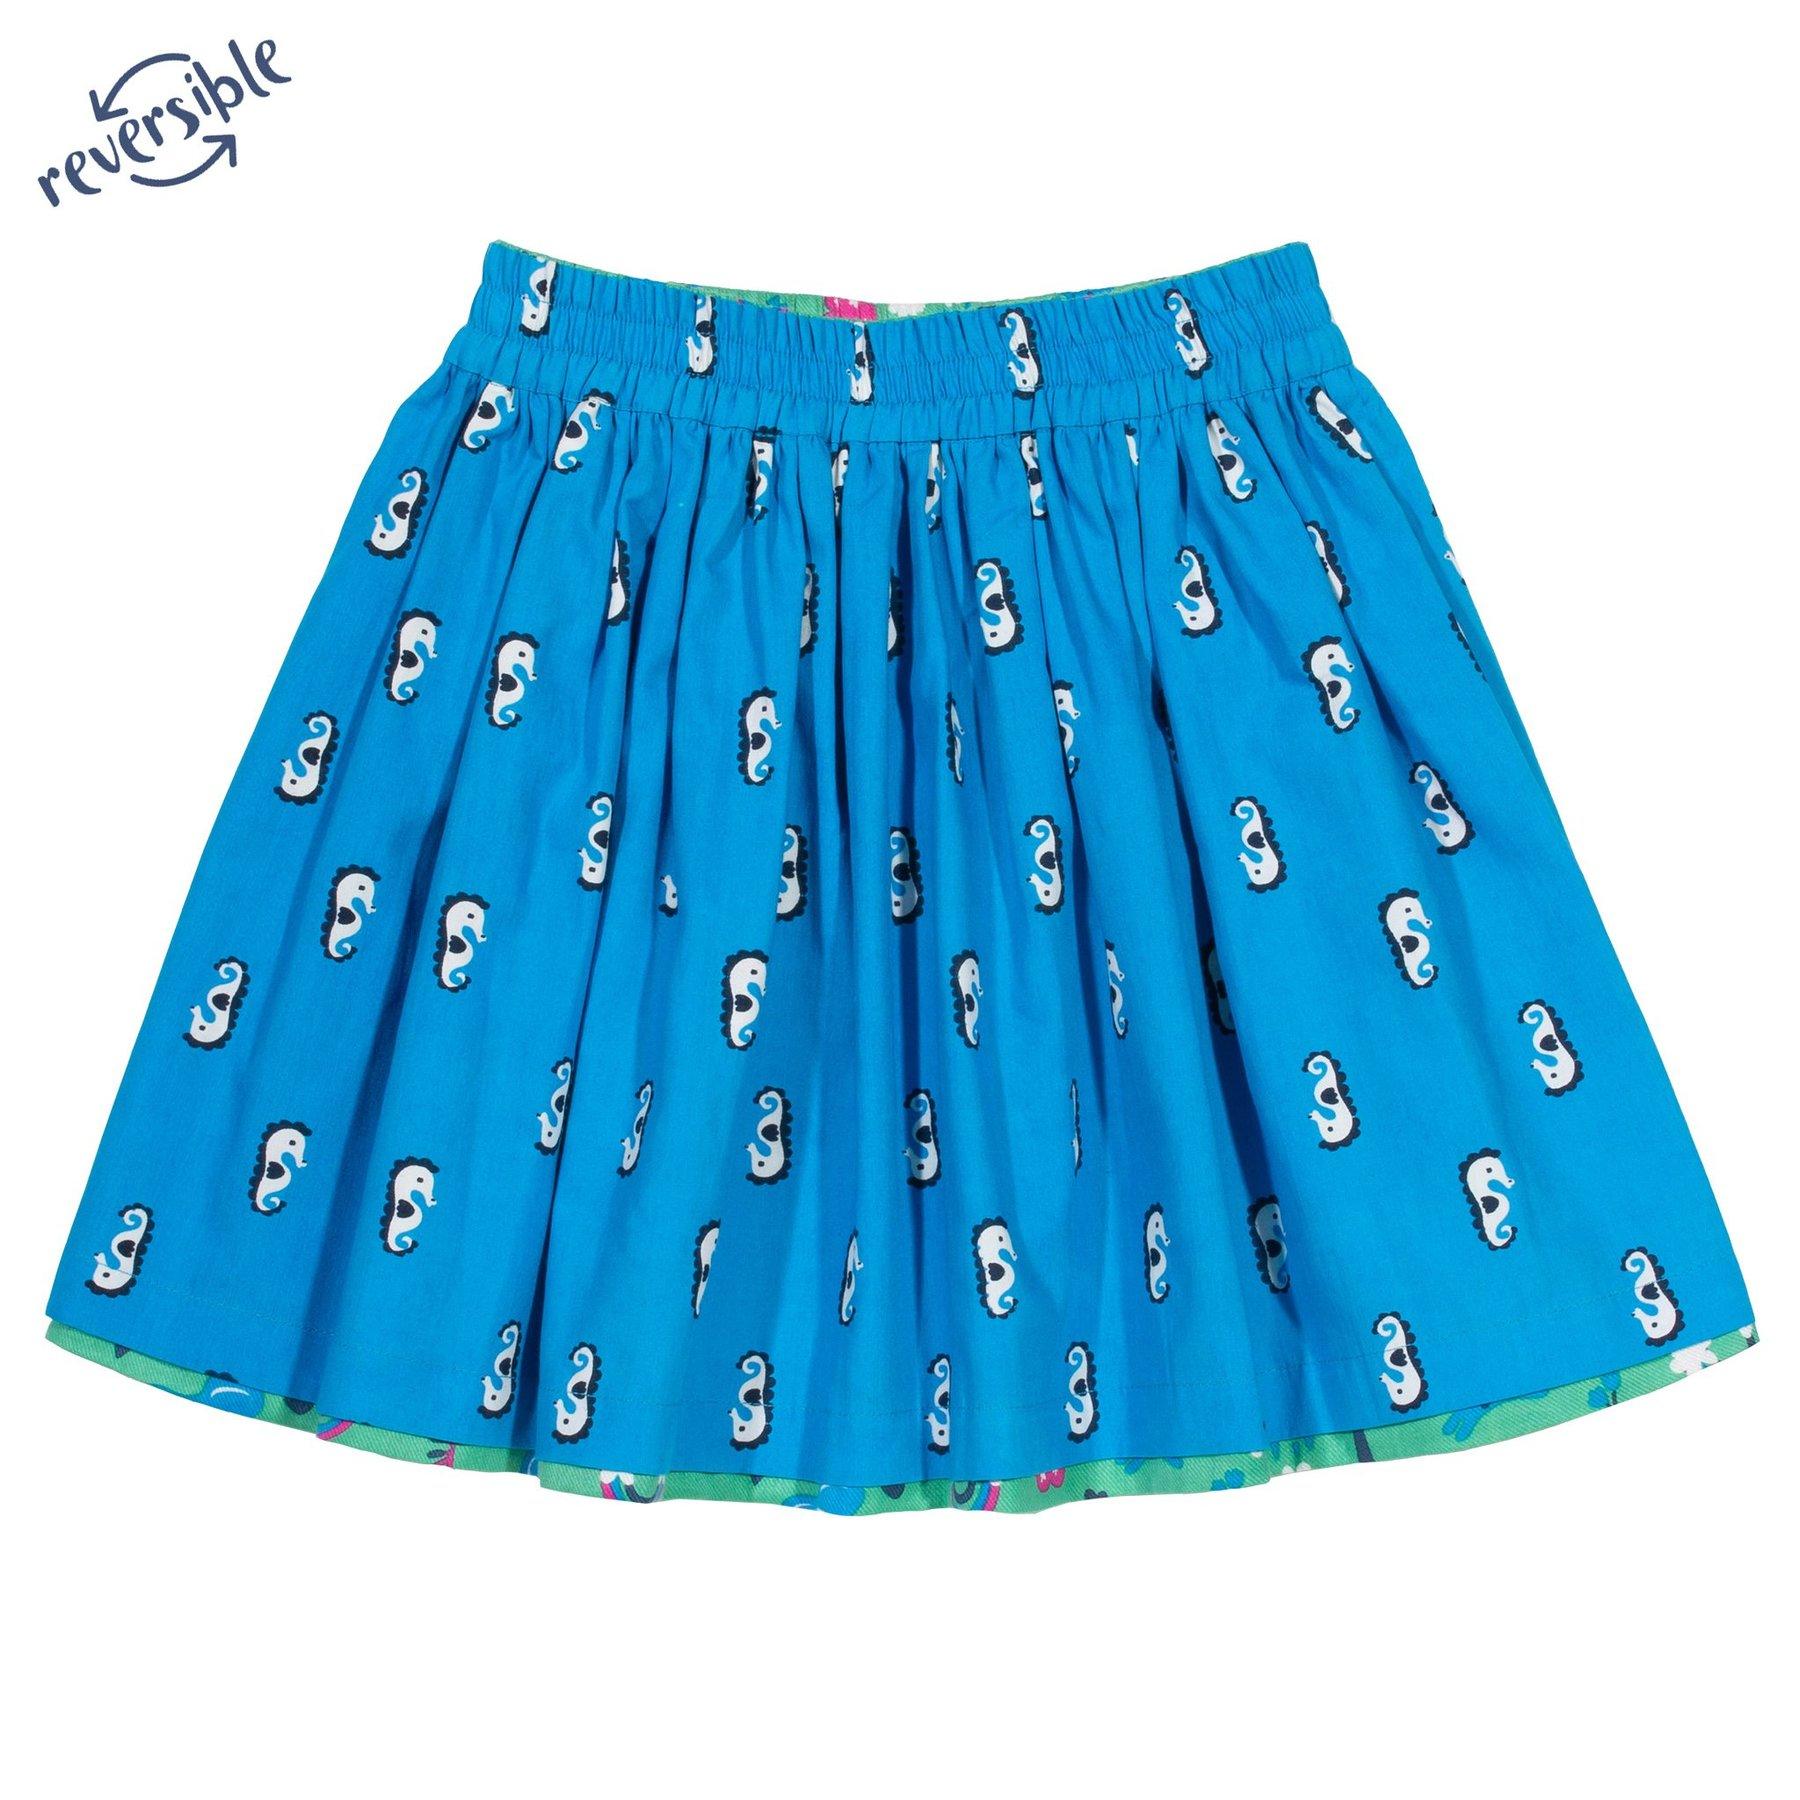 Kite Clothing Park Life Reversible Skirt blue